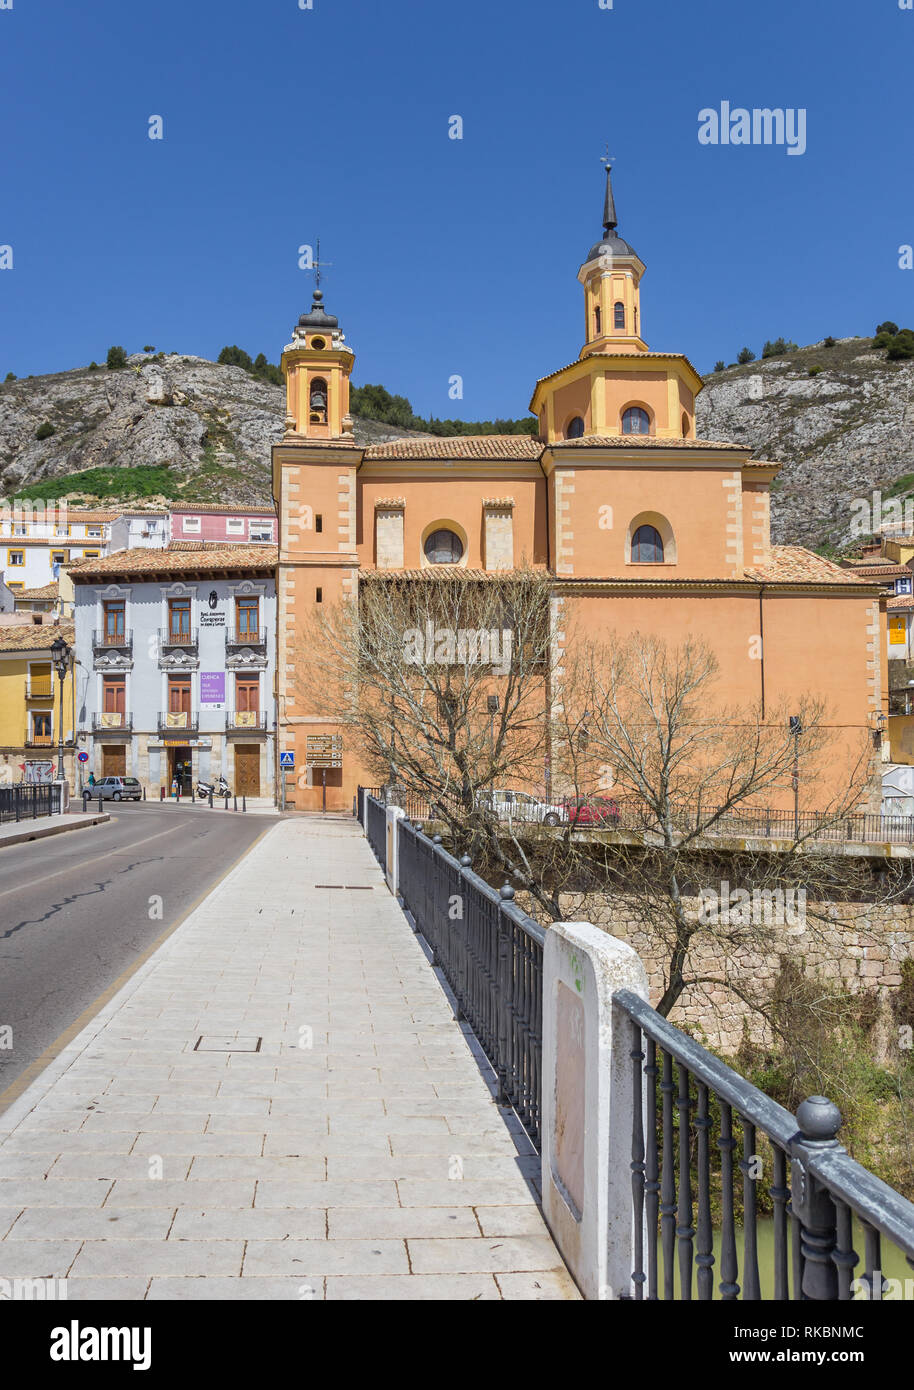 Historic Virgin de la Luz church in Cuenca, Spain Stock Photo